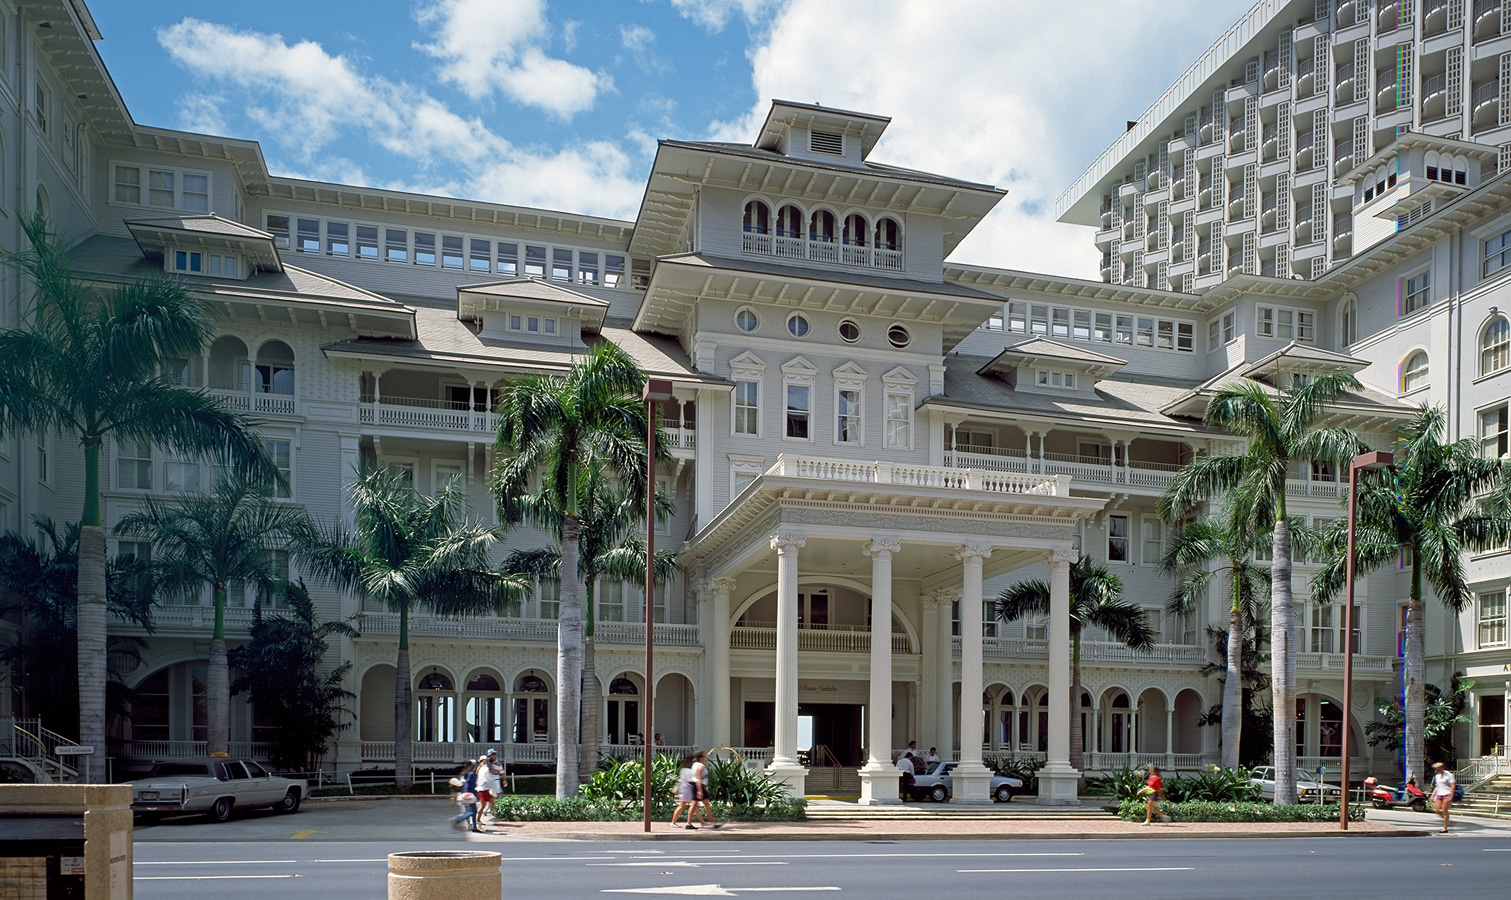 Havaj - hotel Sheraton Moana u pláže Waikiki v Honolulu